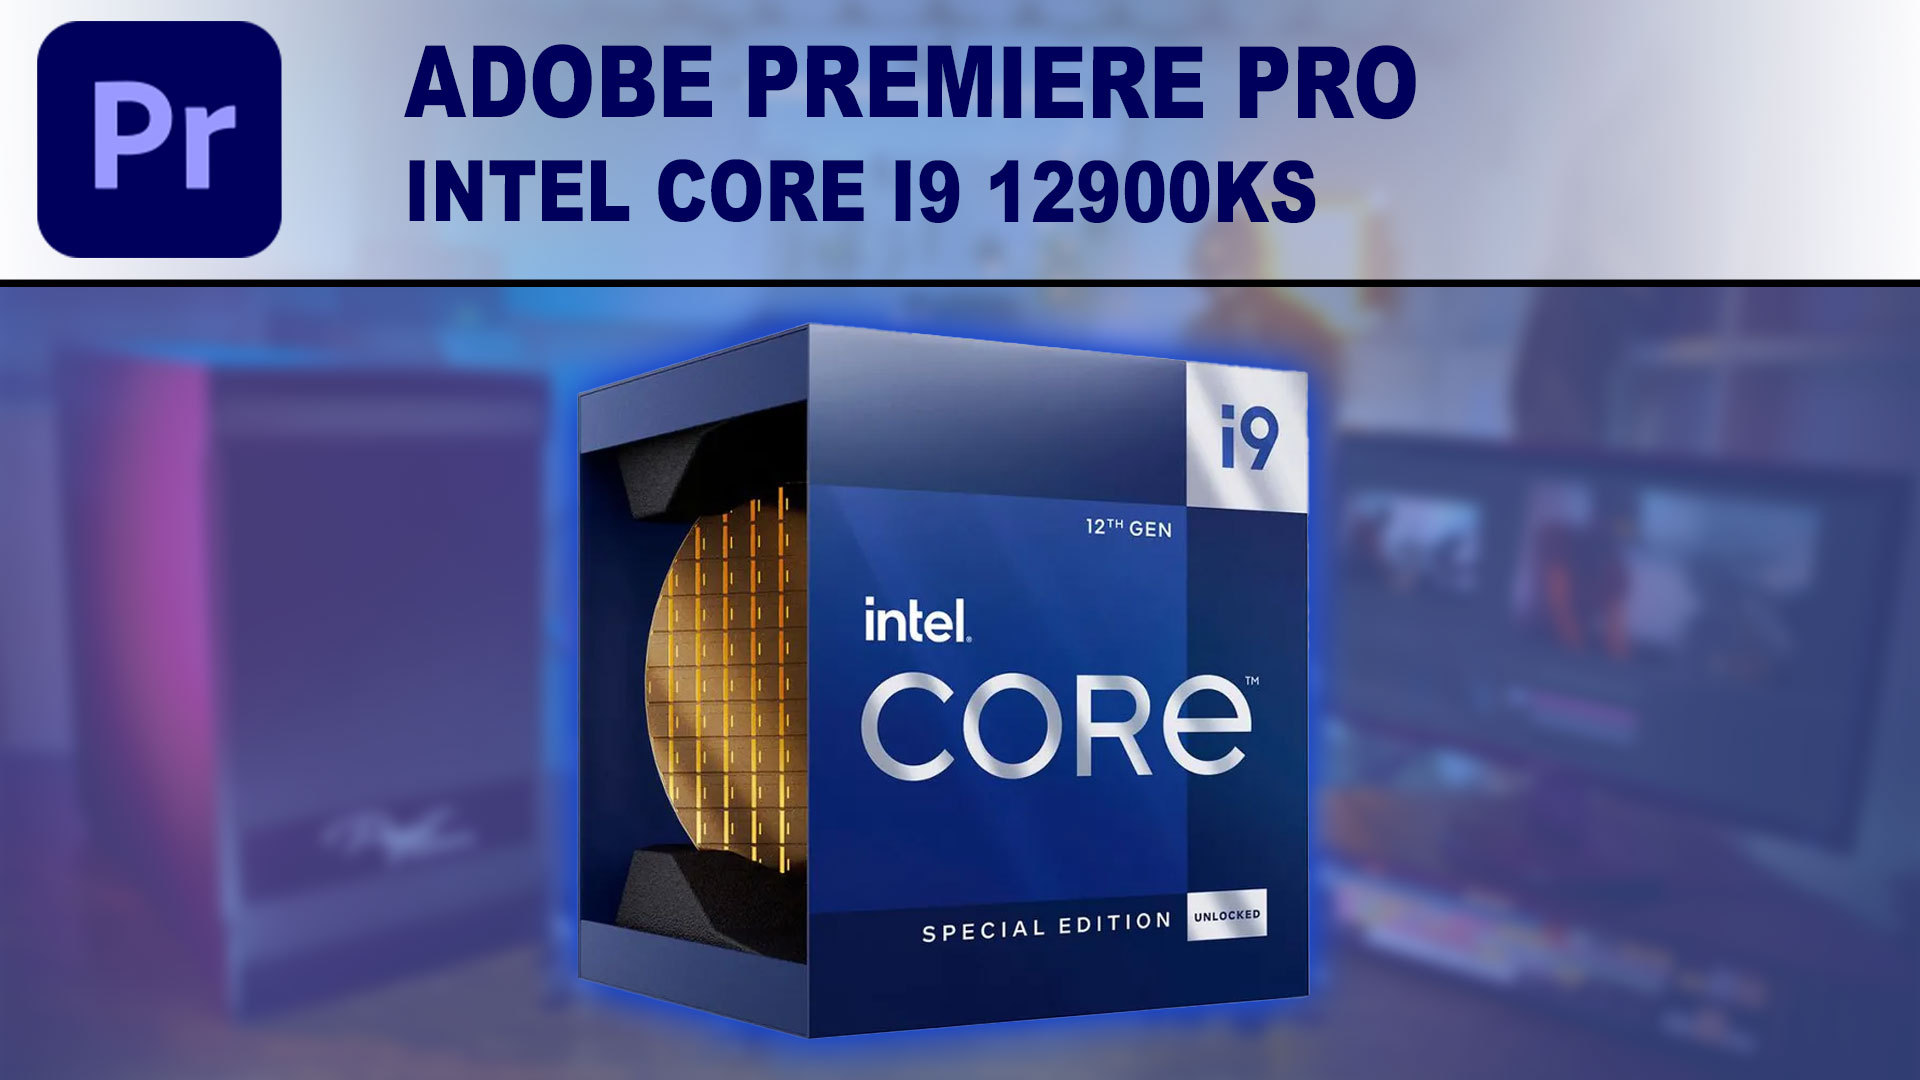 Intel Core i9 12900KS for Adobe Premiere Pro